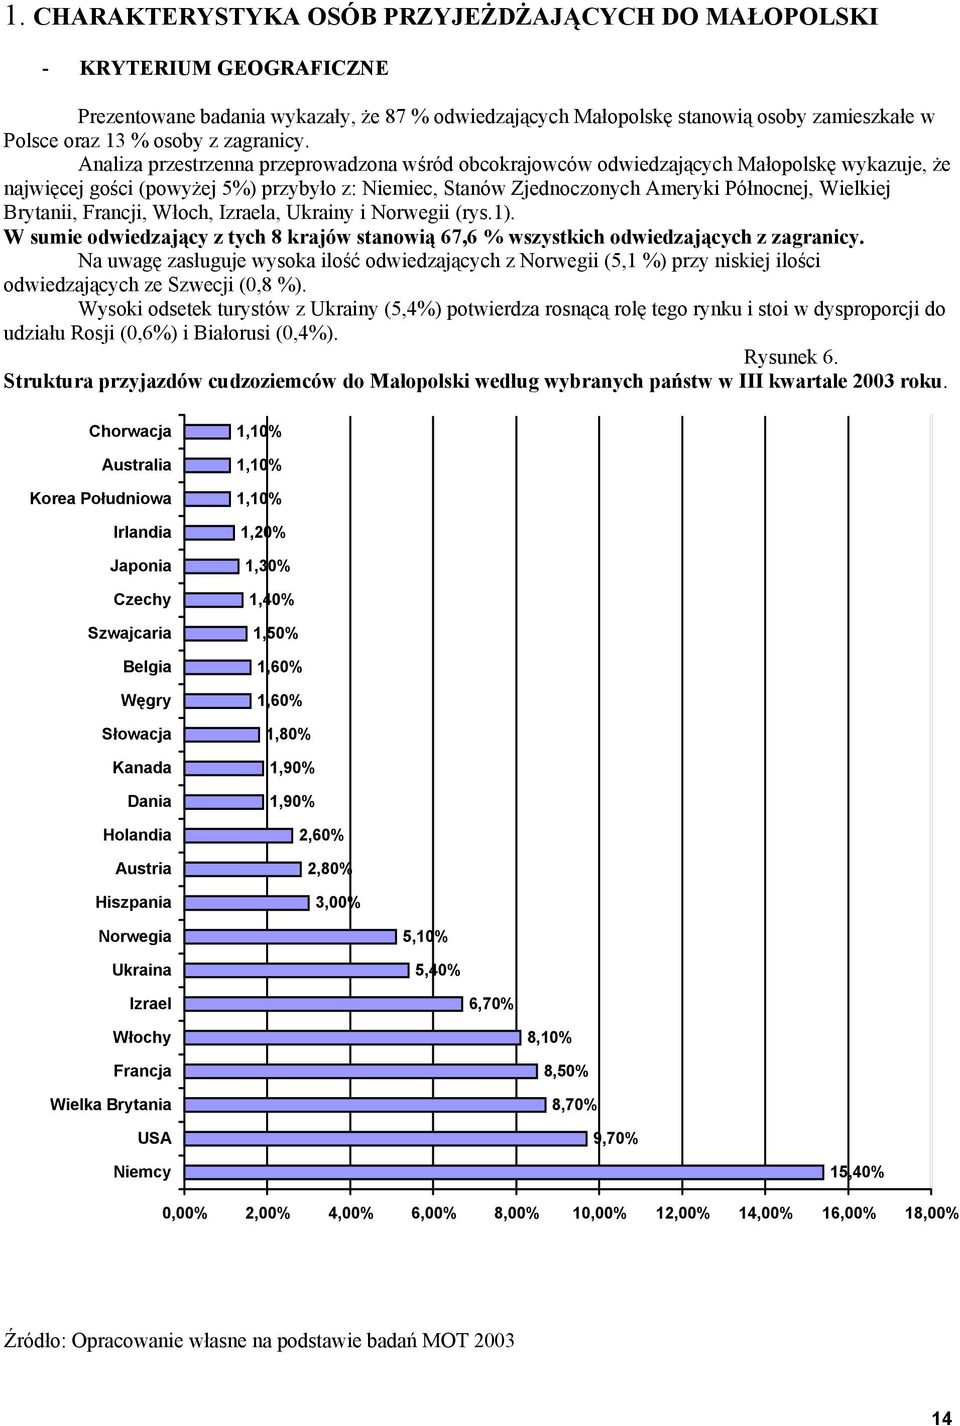 Analiza przestrzenna przeprowadzona wśród obcokrajowców odwiedzających Małopolskę wykazuje, że najwięcej gości (powyżej 5%) przybyło z: Niemiec, Stanów Zjednoczonych Ameryki Północnej, Wielkiej